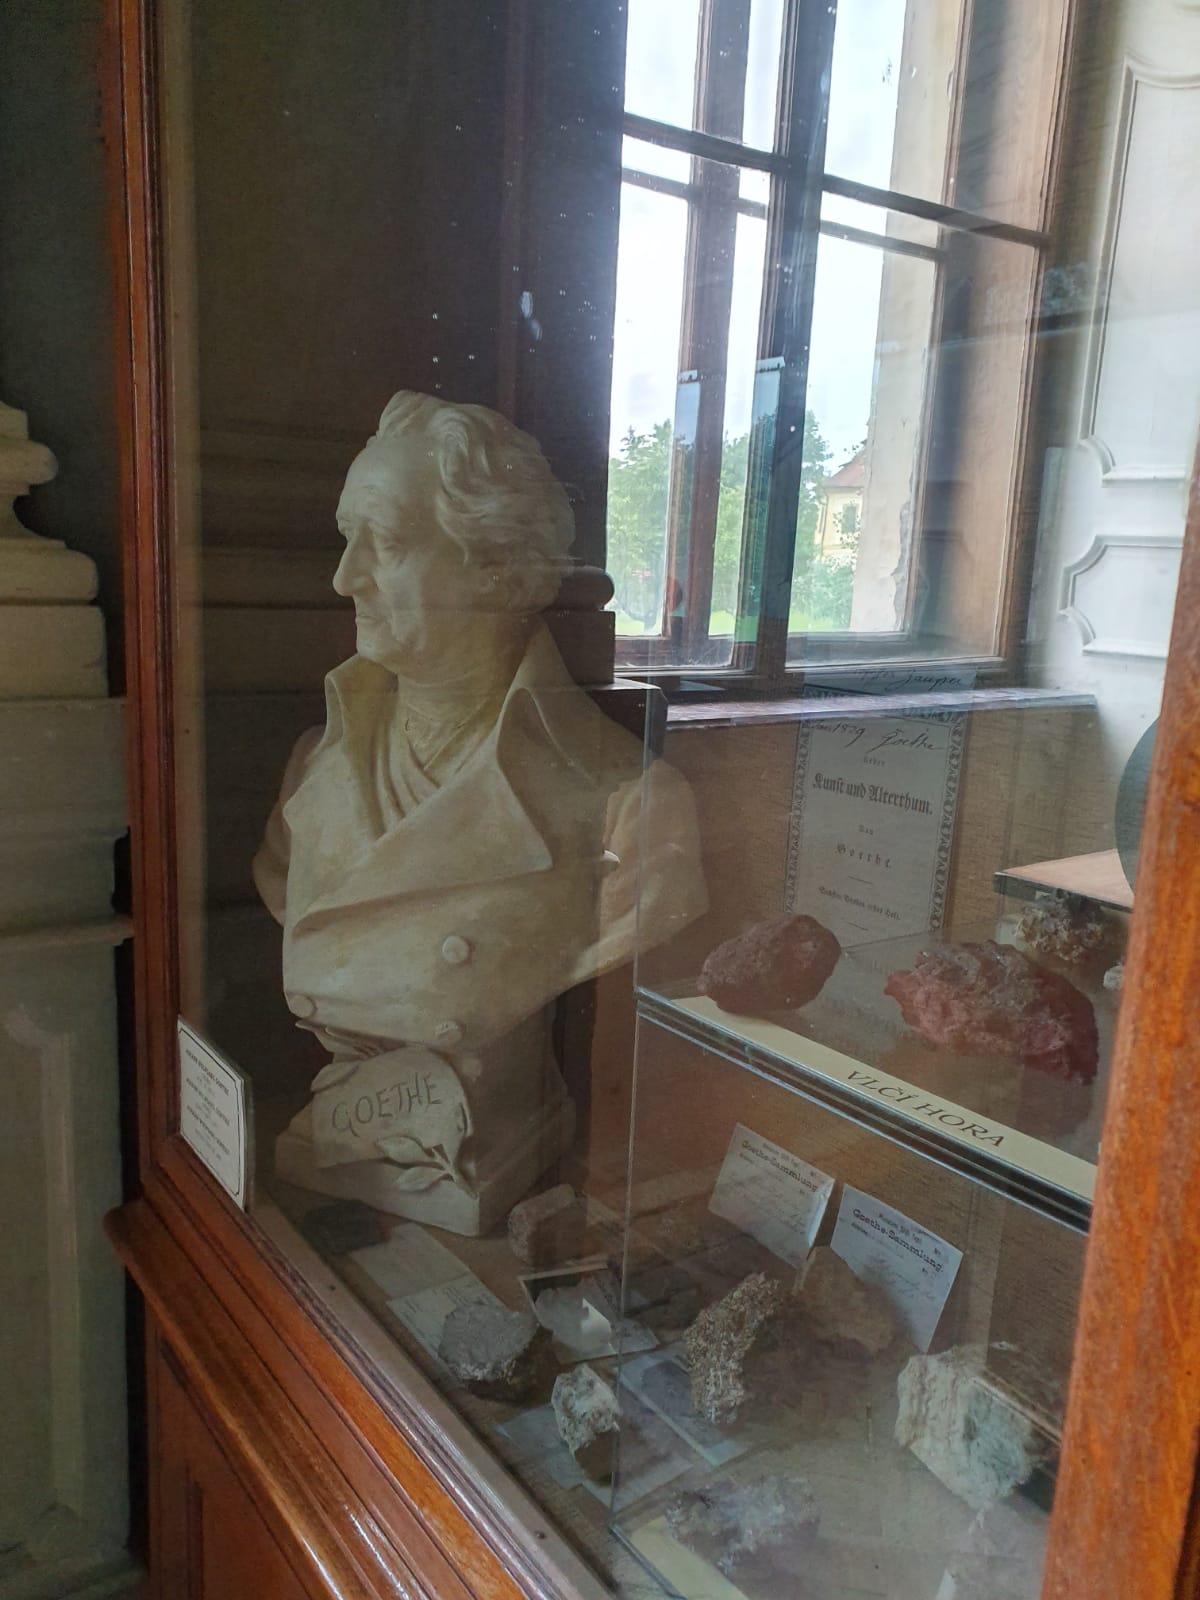 Erinnerung an den Mineralogen Goethe